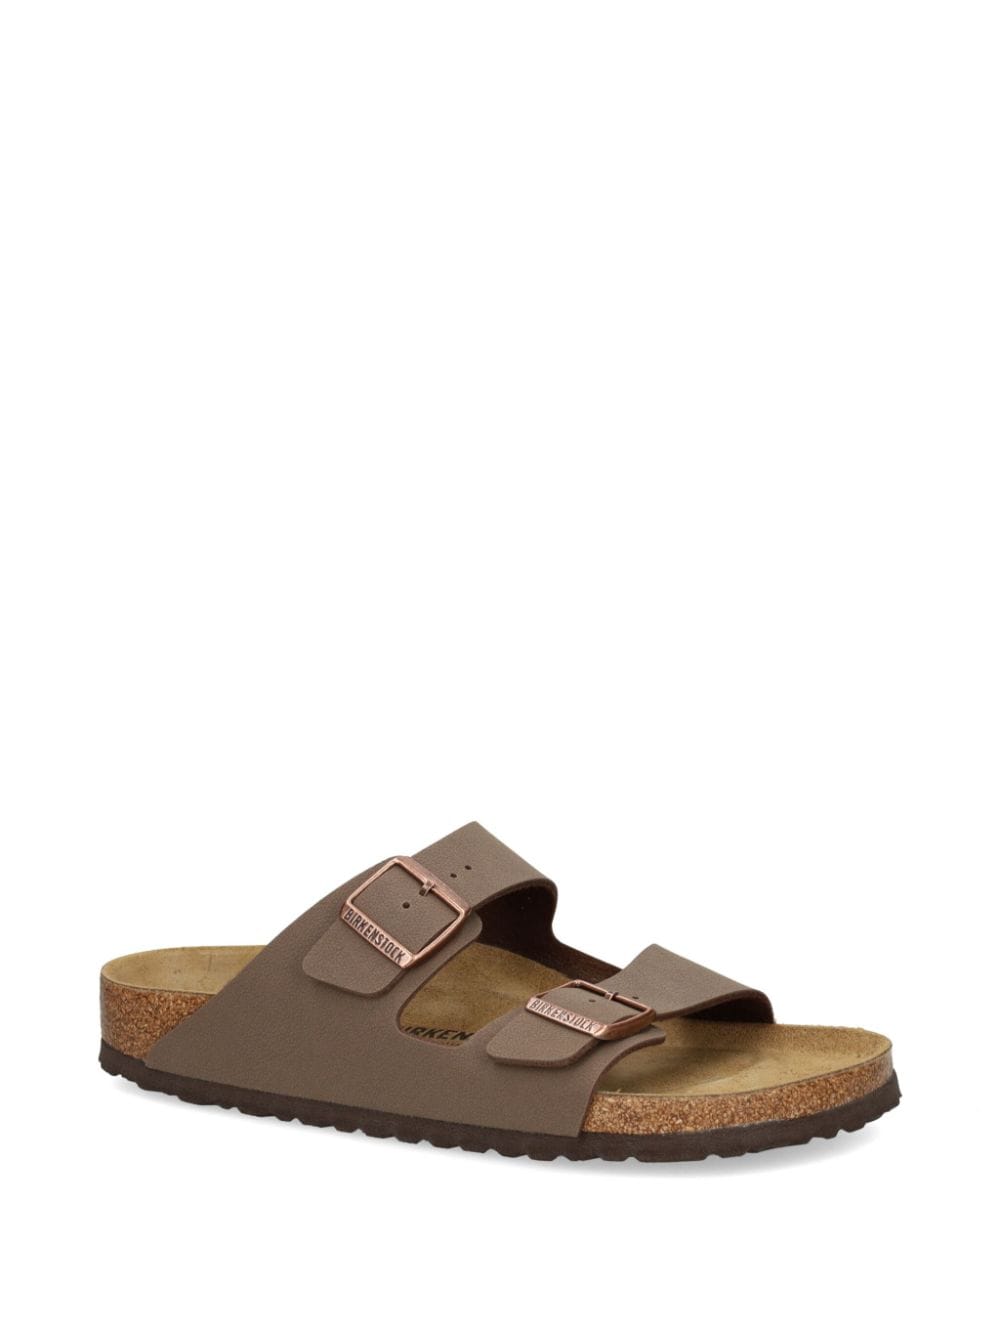 Birkenstock Arizona double-buckled sandals - Bruin